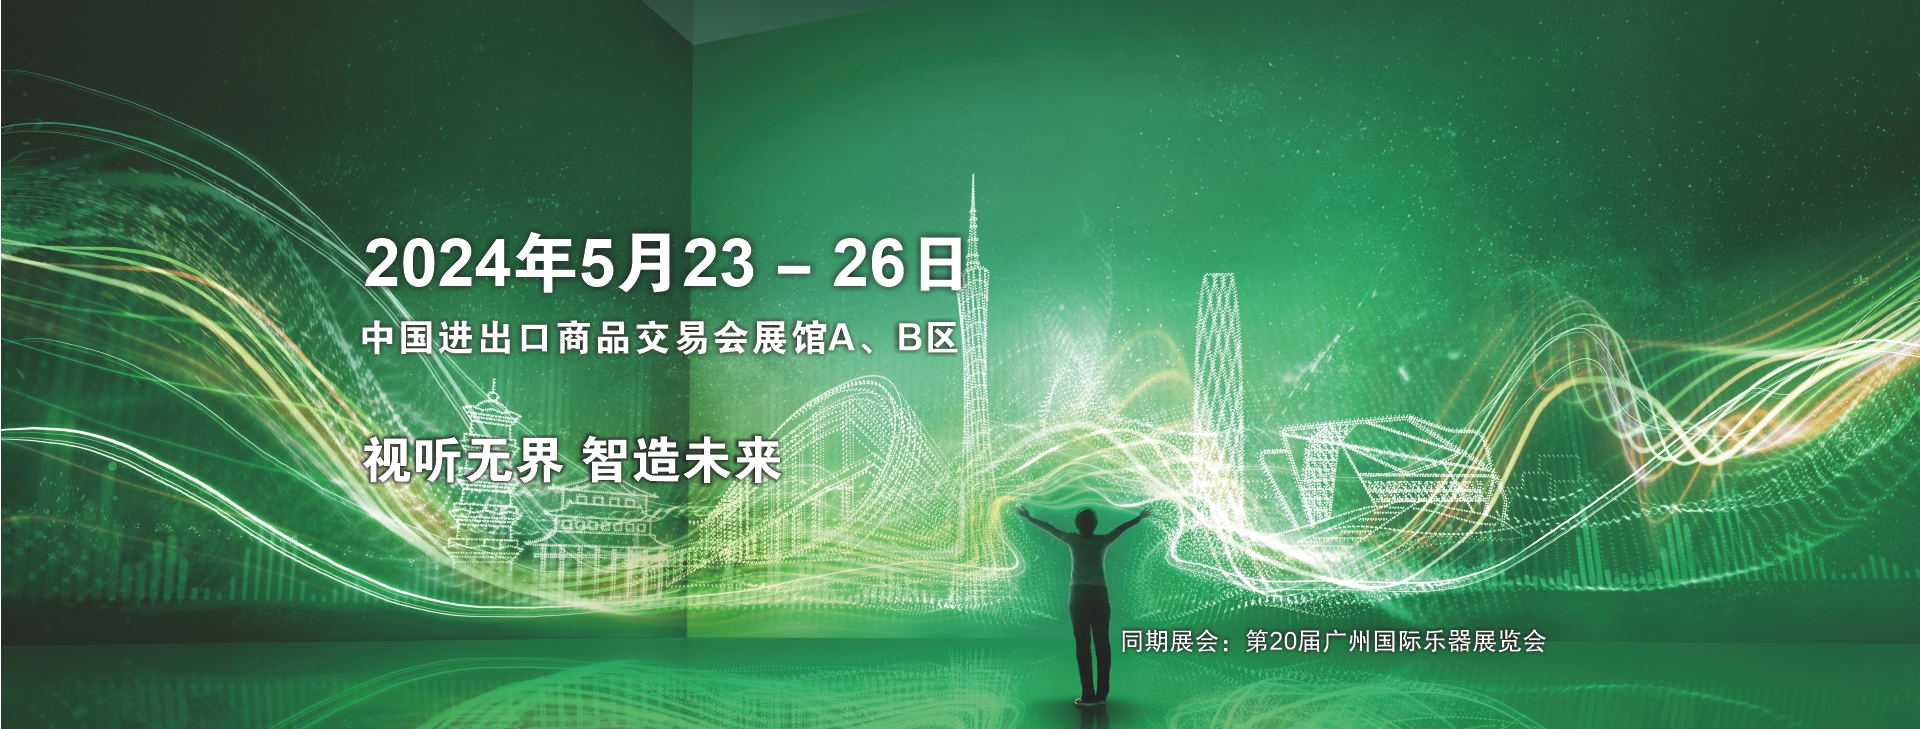 广州国际专业灯光、音响展览会 2024诚邀您参观